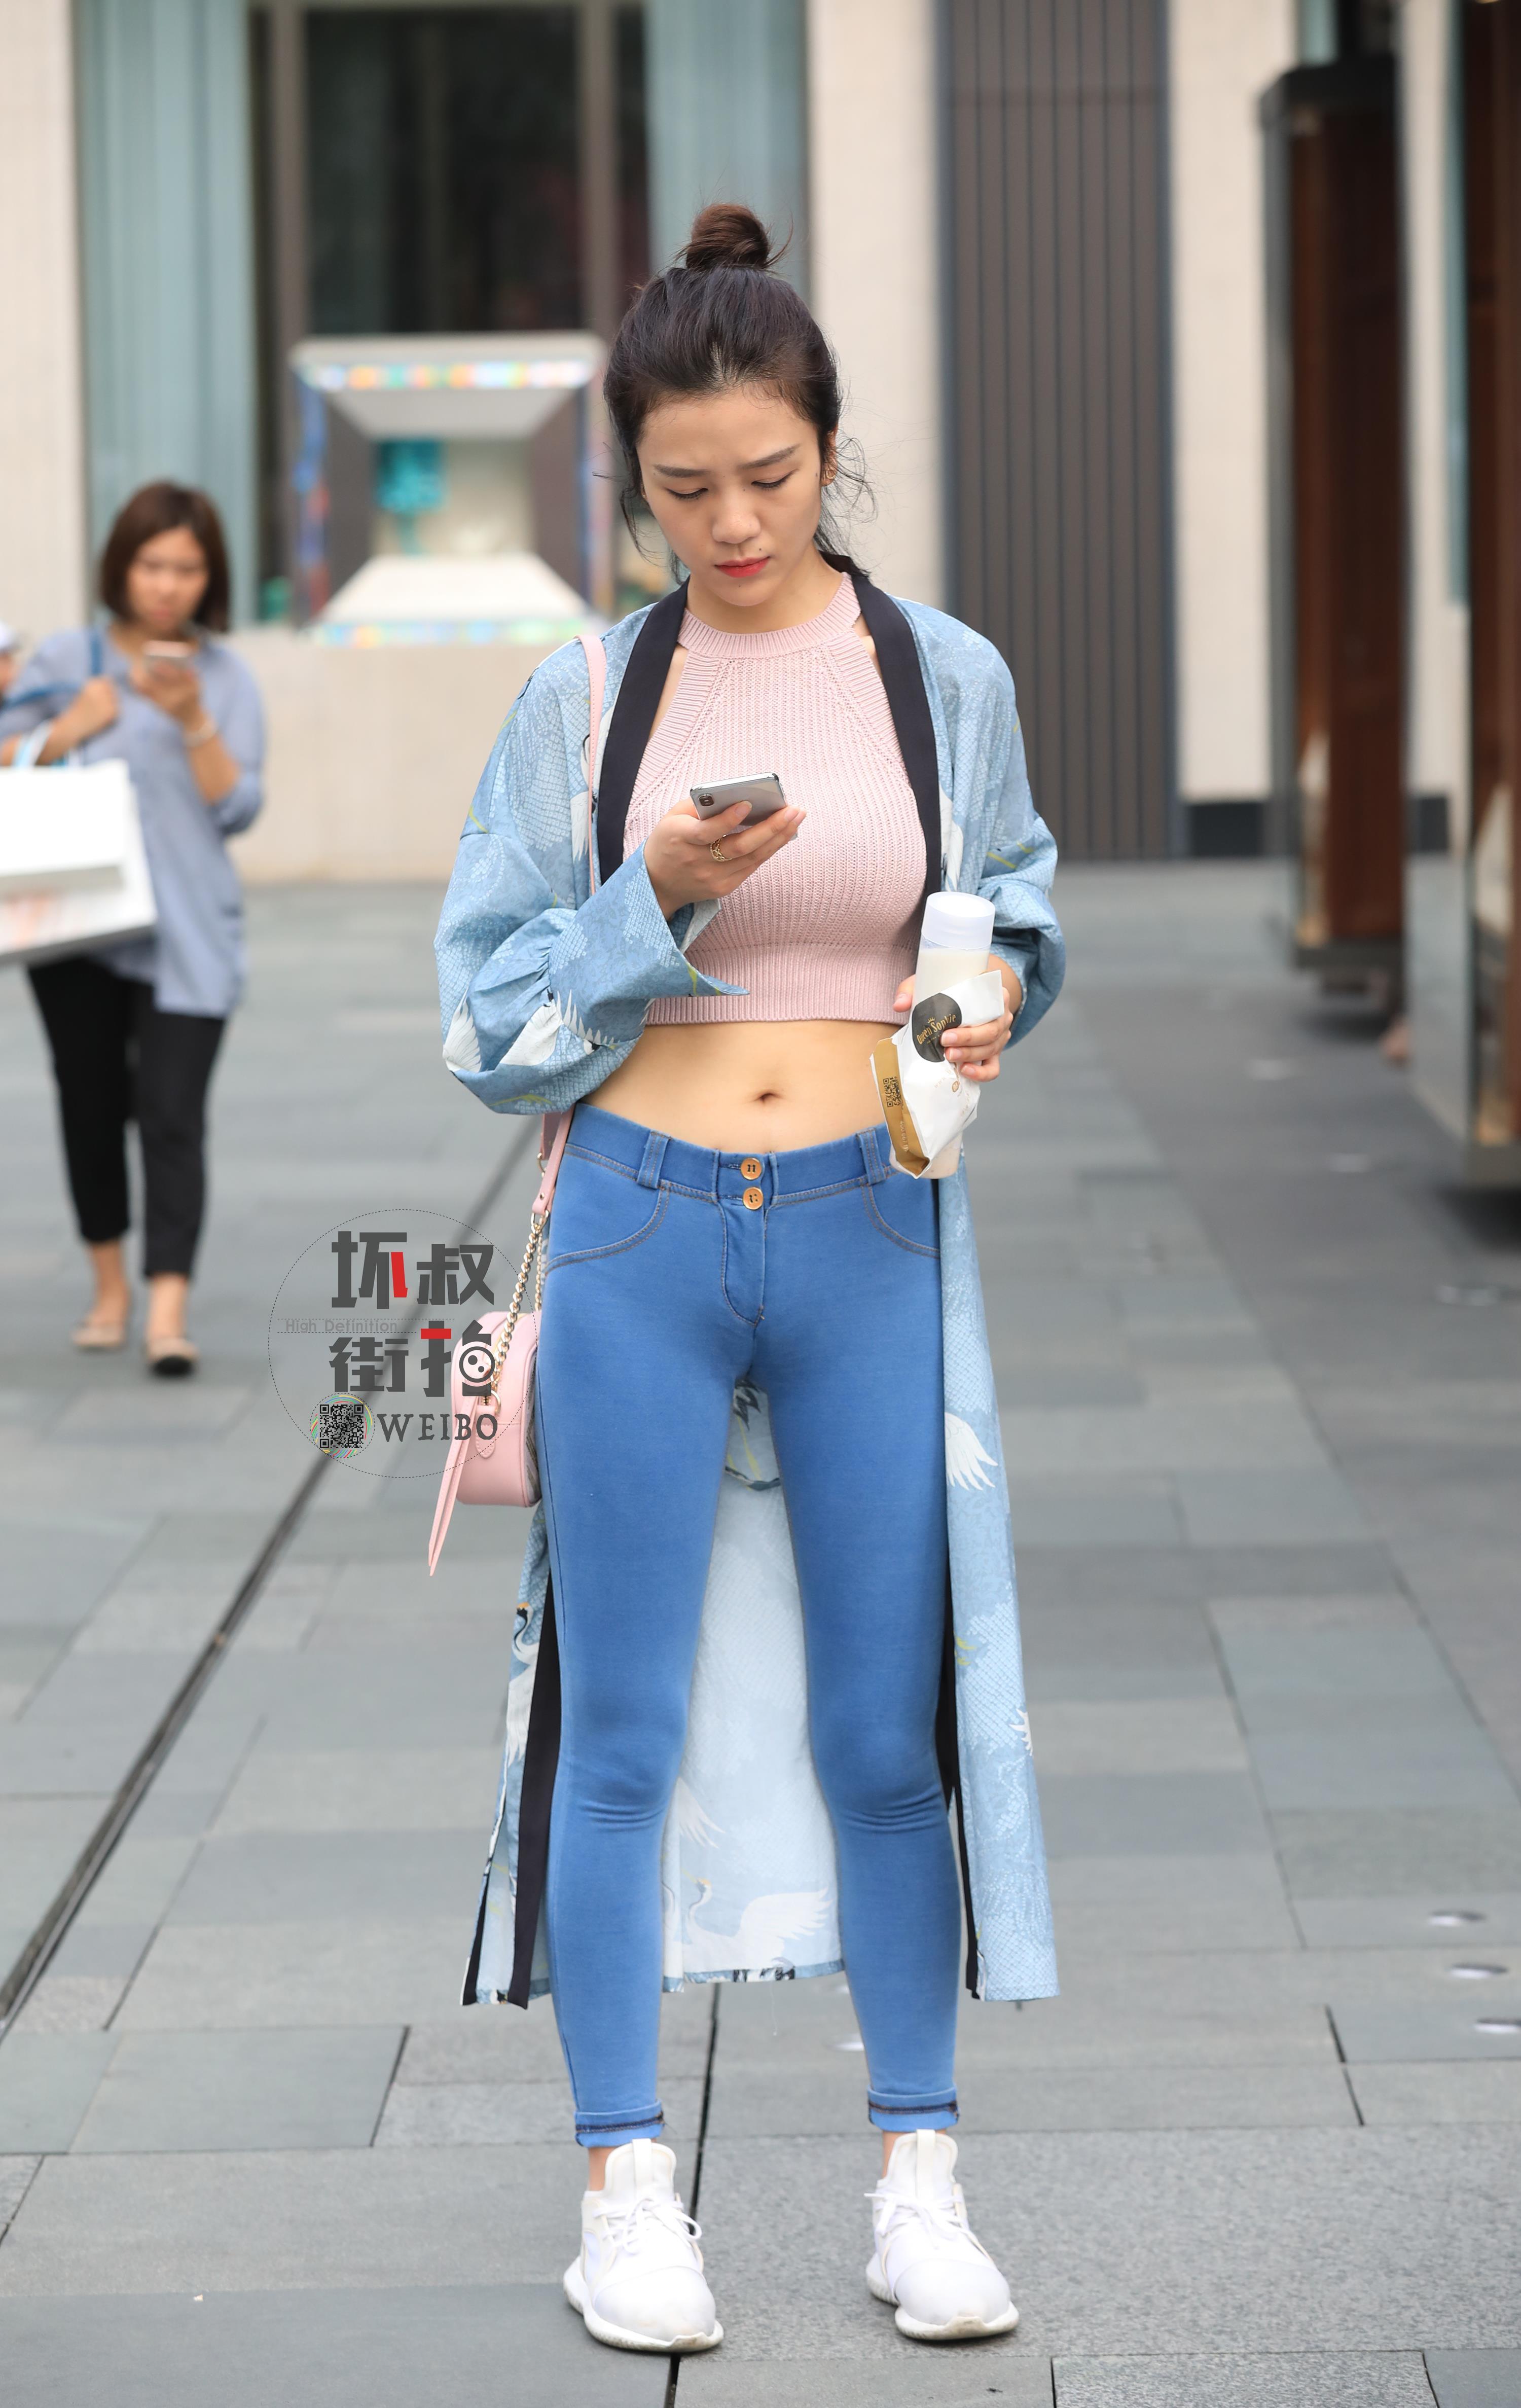 购物街边走边玩手机的性感美女 粉色镂空上衣加紧身牛仔裤,